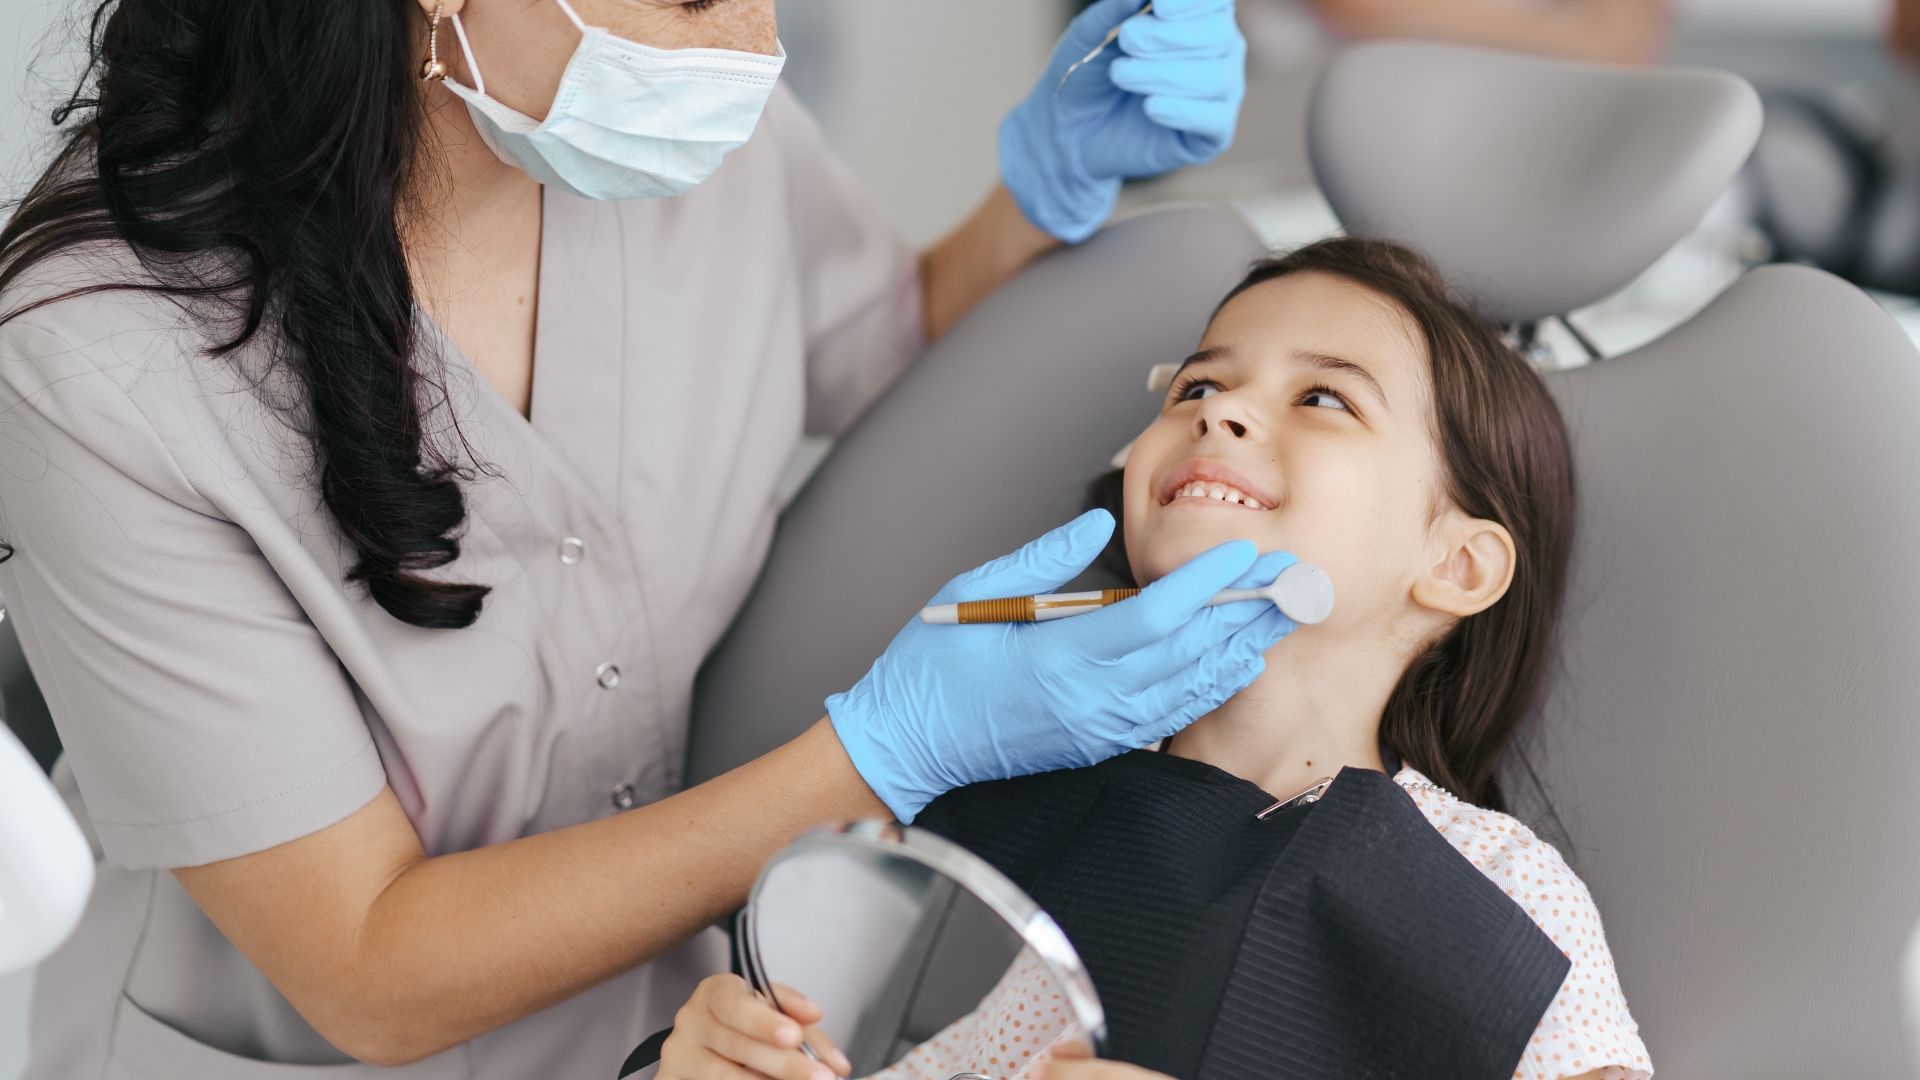 Family dentistry - Children's Dental Health in Santa Clarita